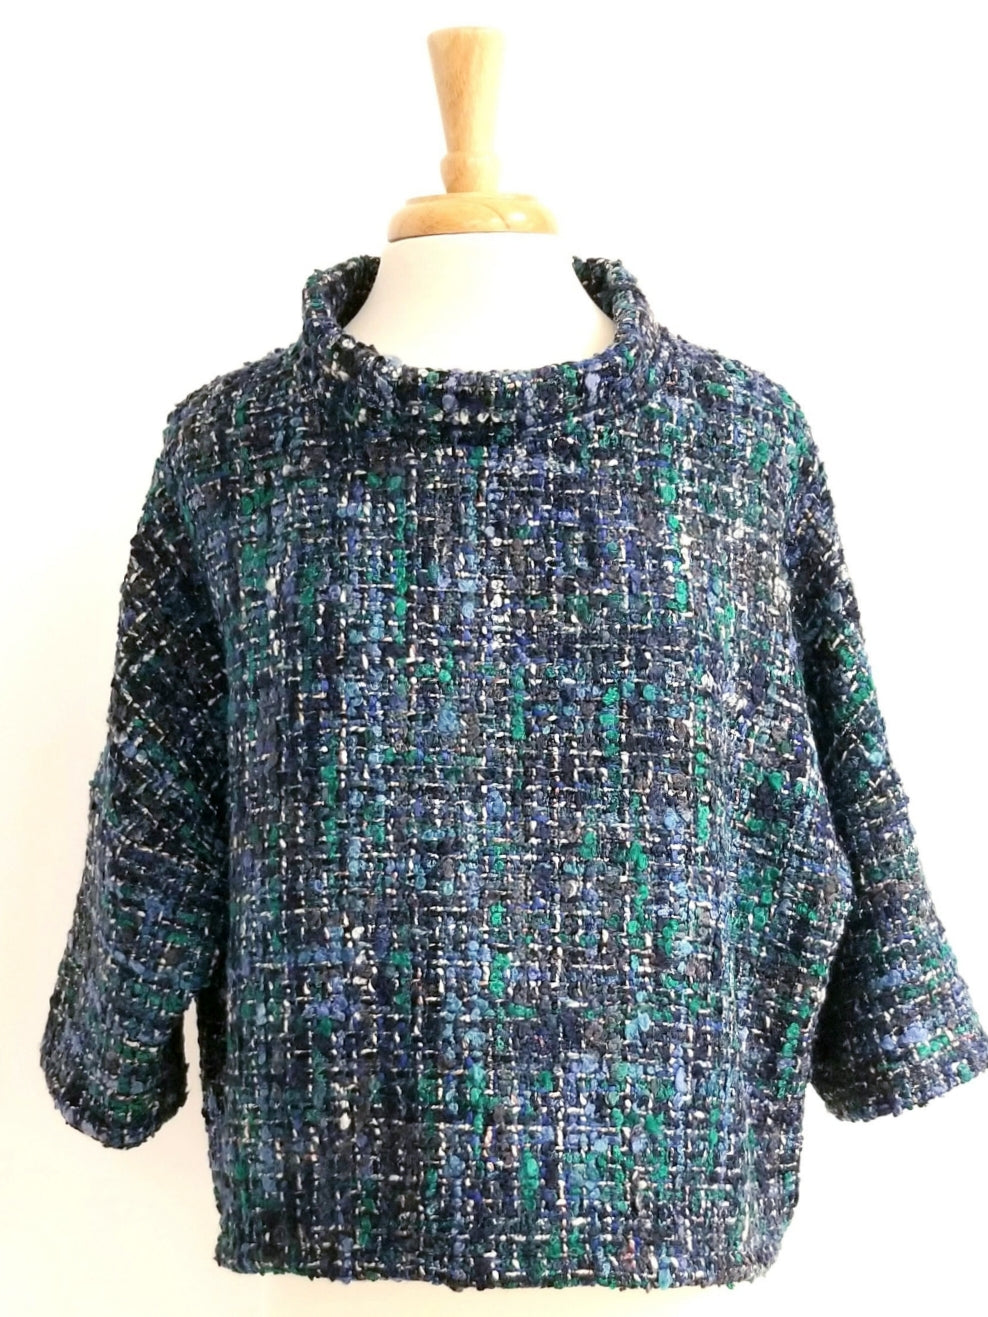 Vêtement en laine de designer québécois, CM atelier-boutique